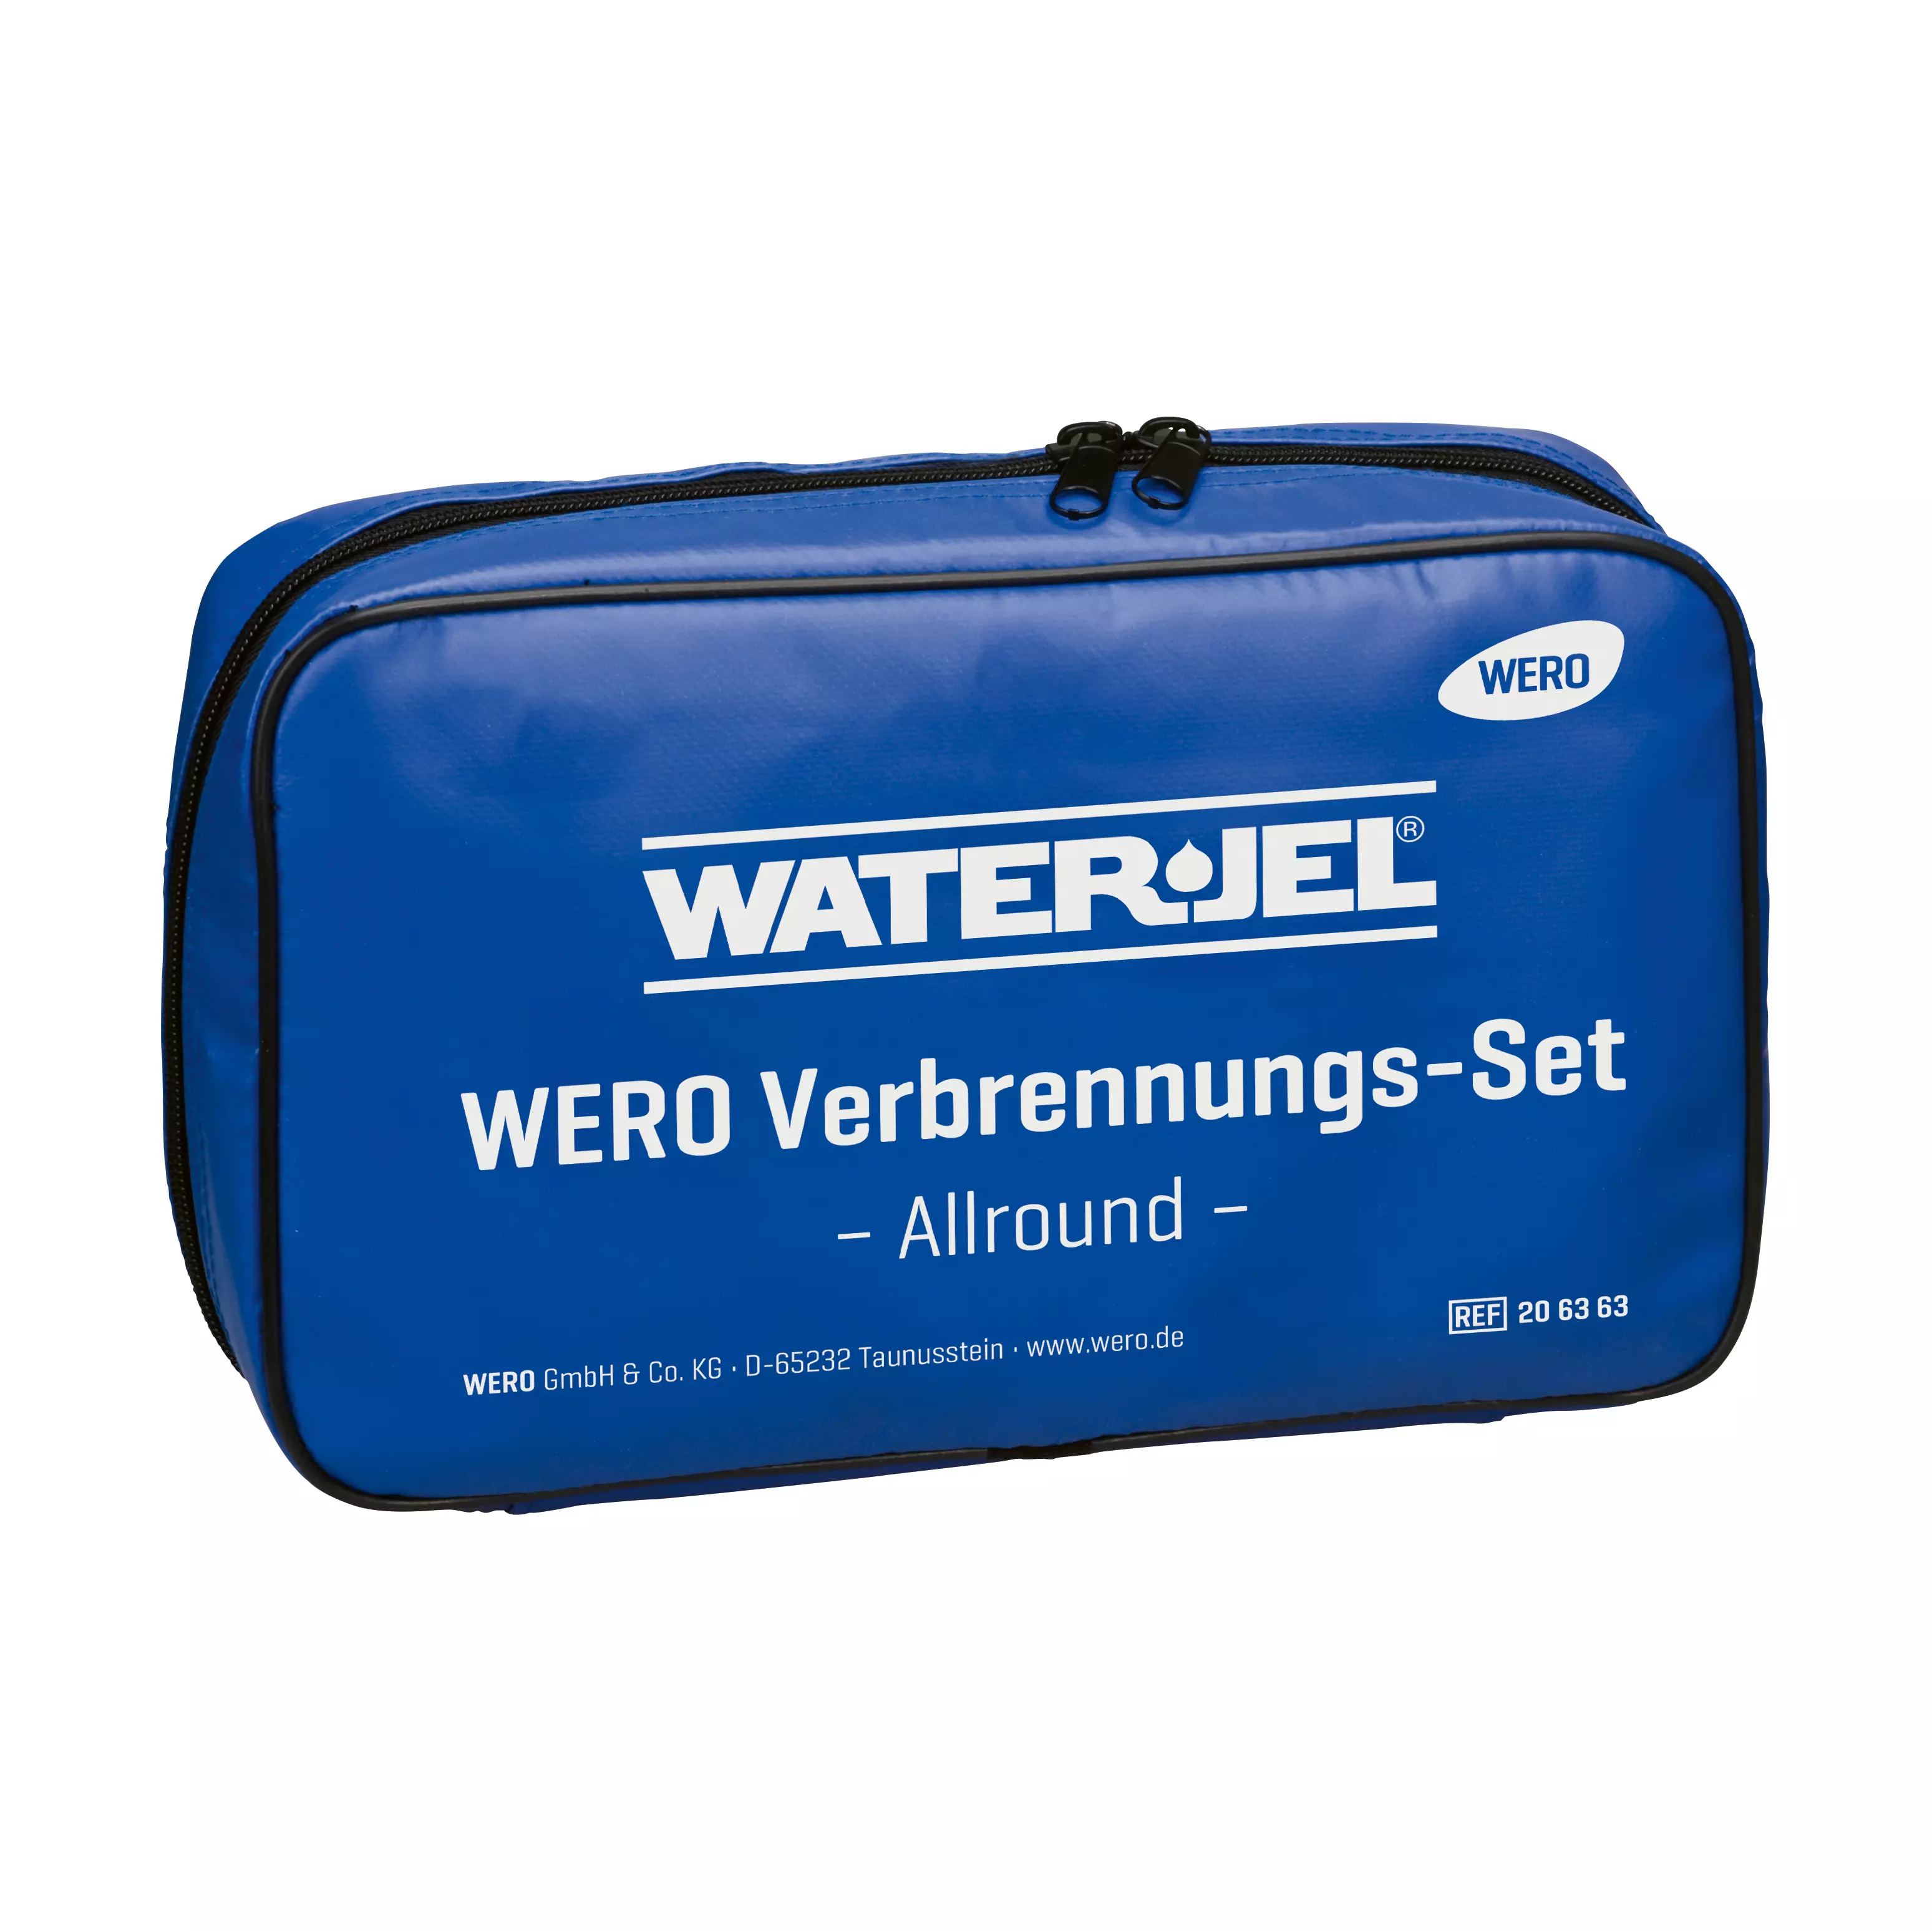 WERO Verbrennungs-Set, Allround - Tasche